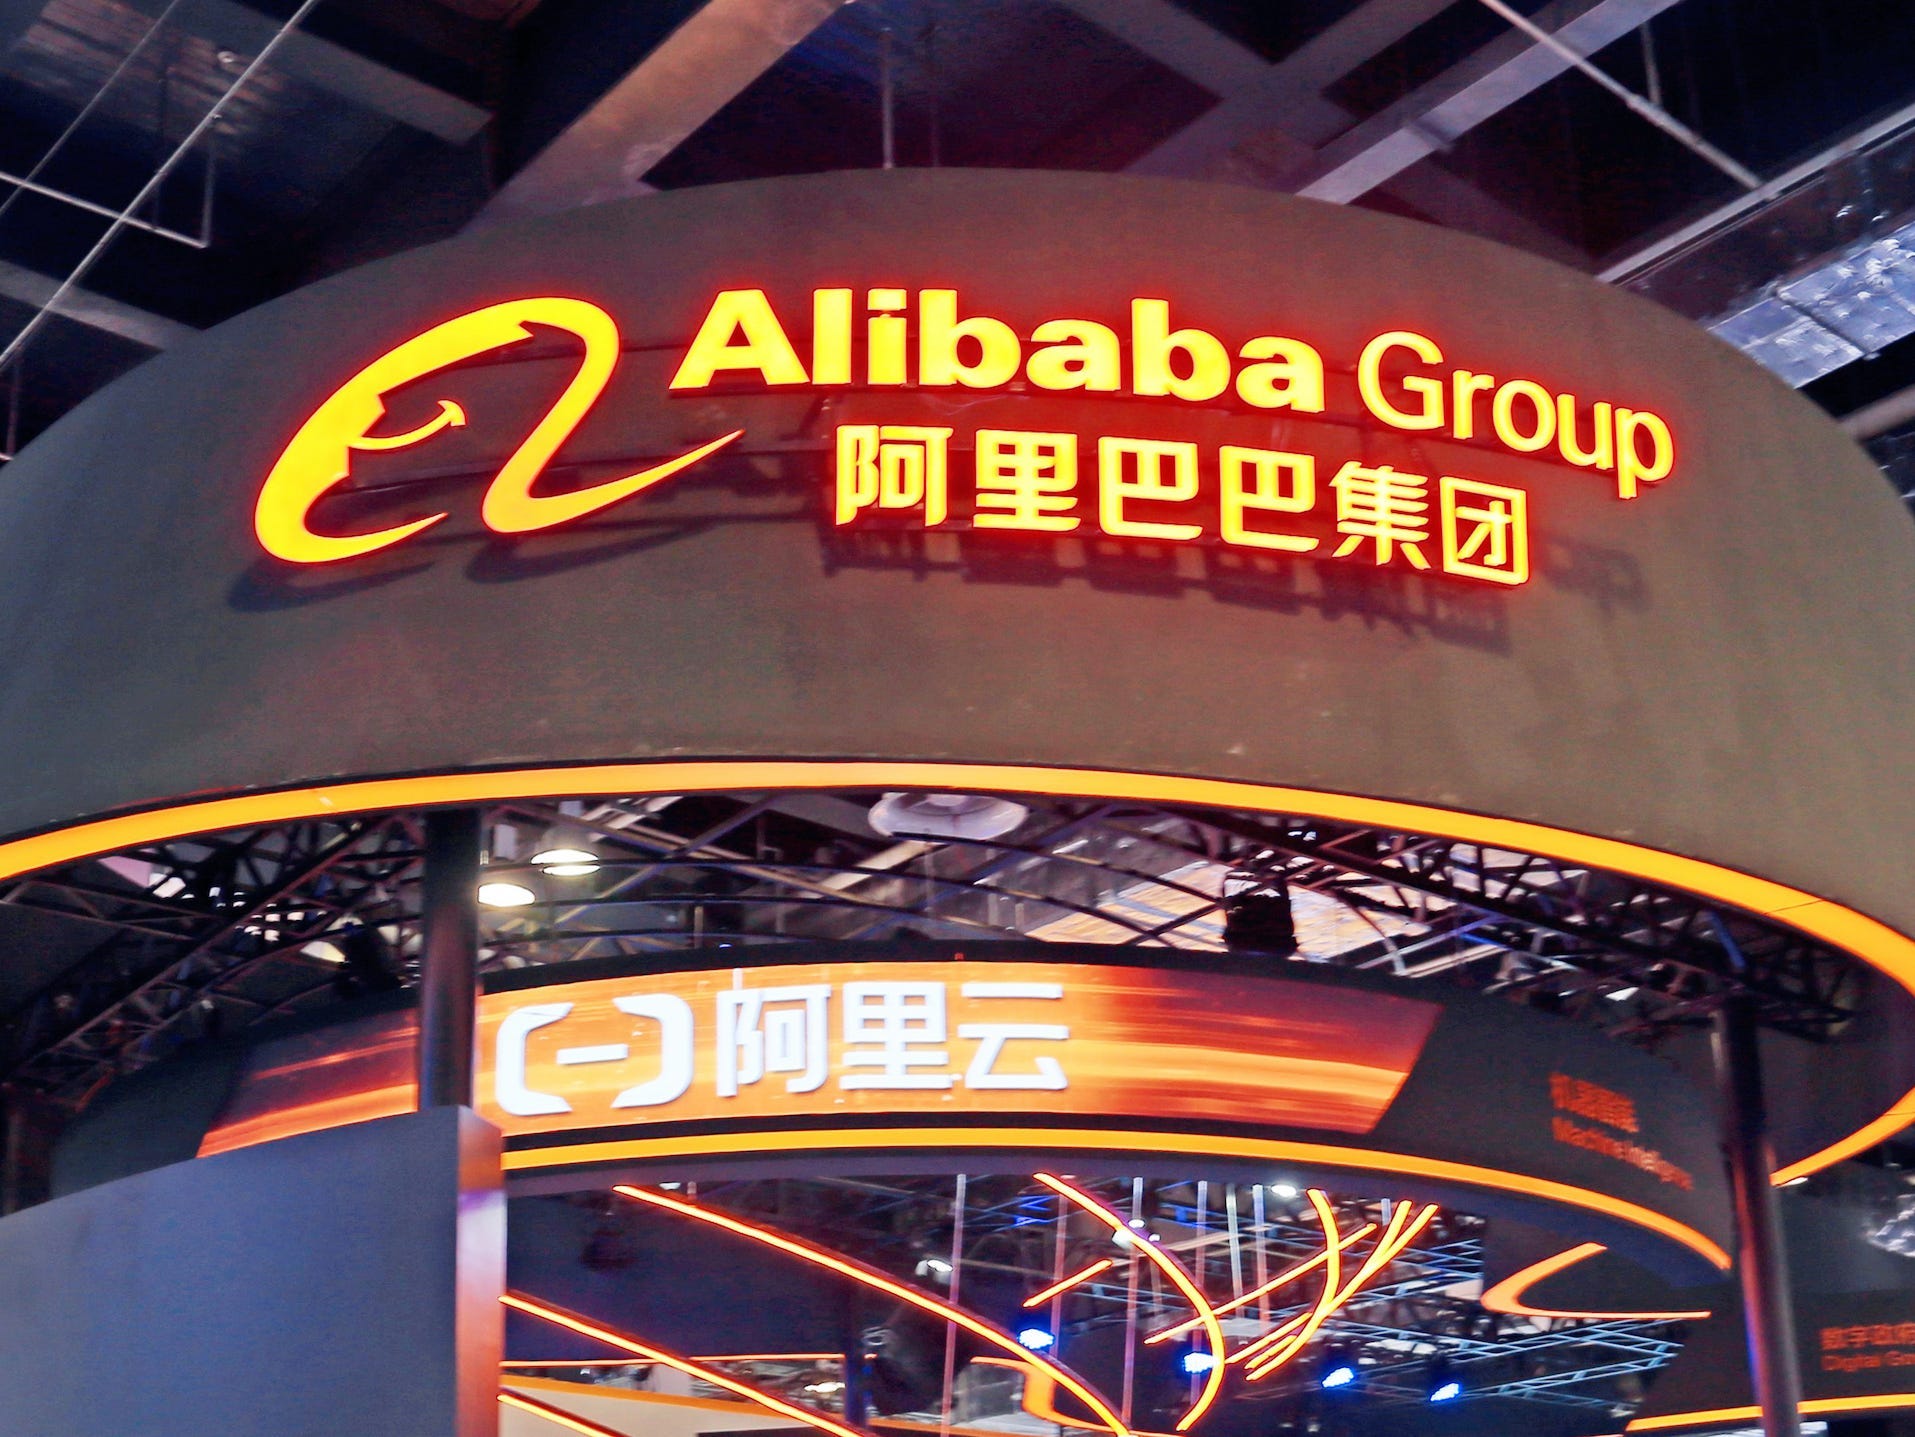 Eine Szene aus KI-Technologie und digitalem Smart Life am Stand von Alibaba und der Ant Group auf dem World Intelligence Congress in Shanghai, China, im Juli 2021.